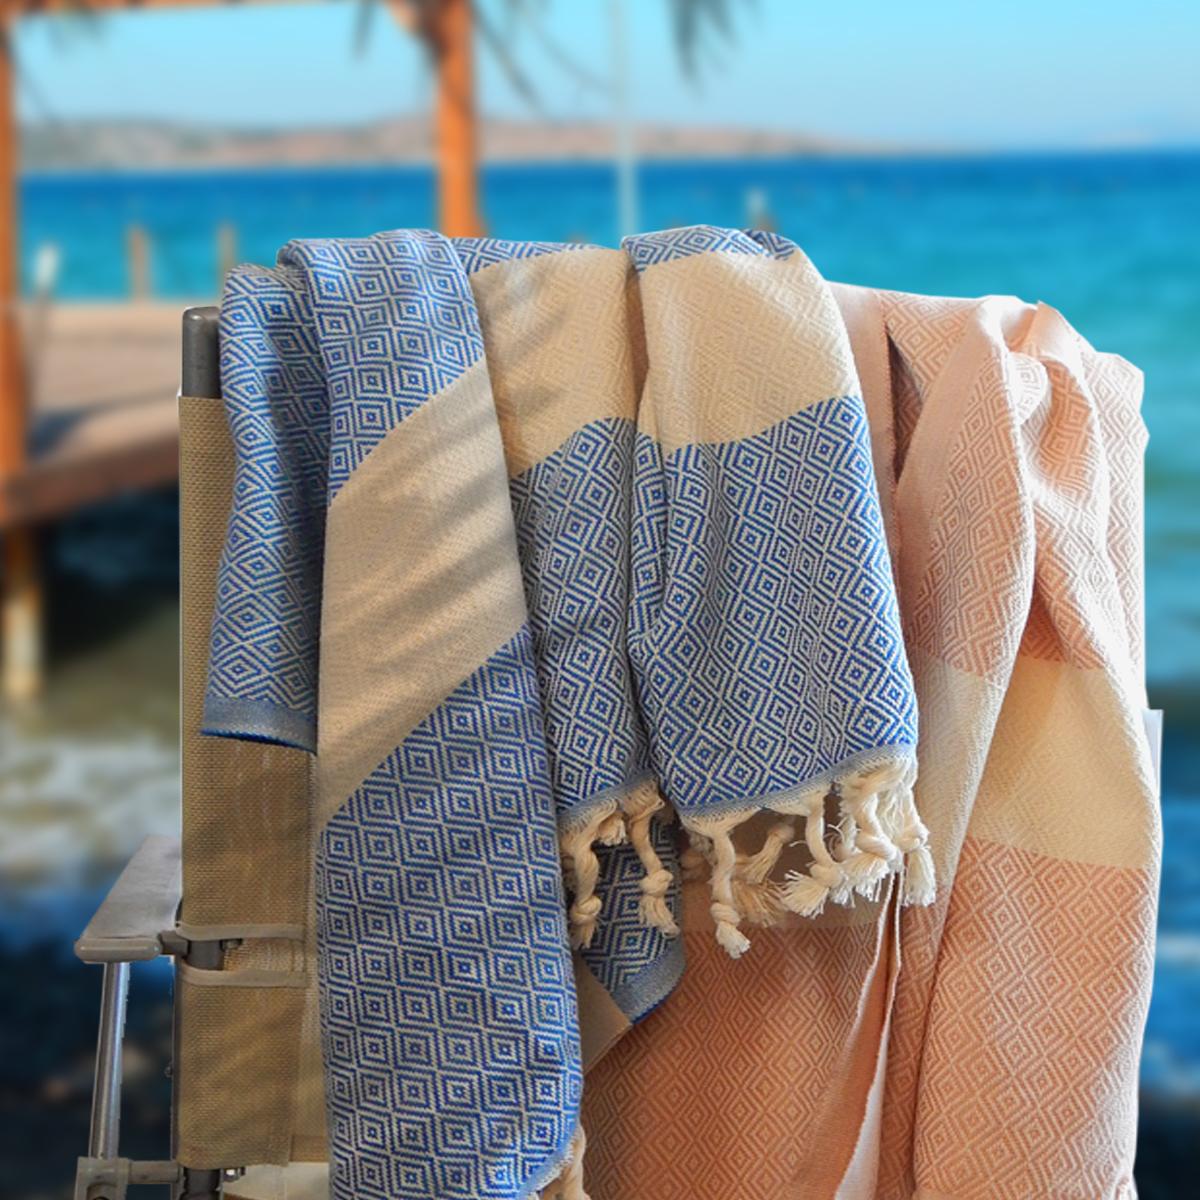 Bath, Towels, Sets - Maui Luxury Hotel Resort Bath Towels